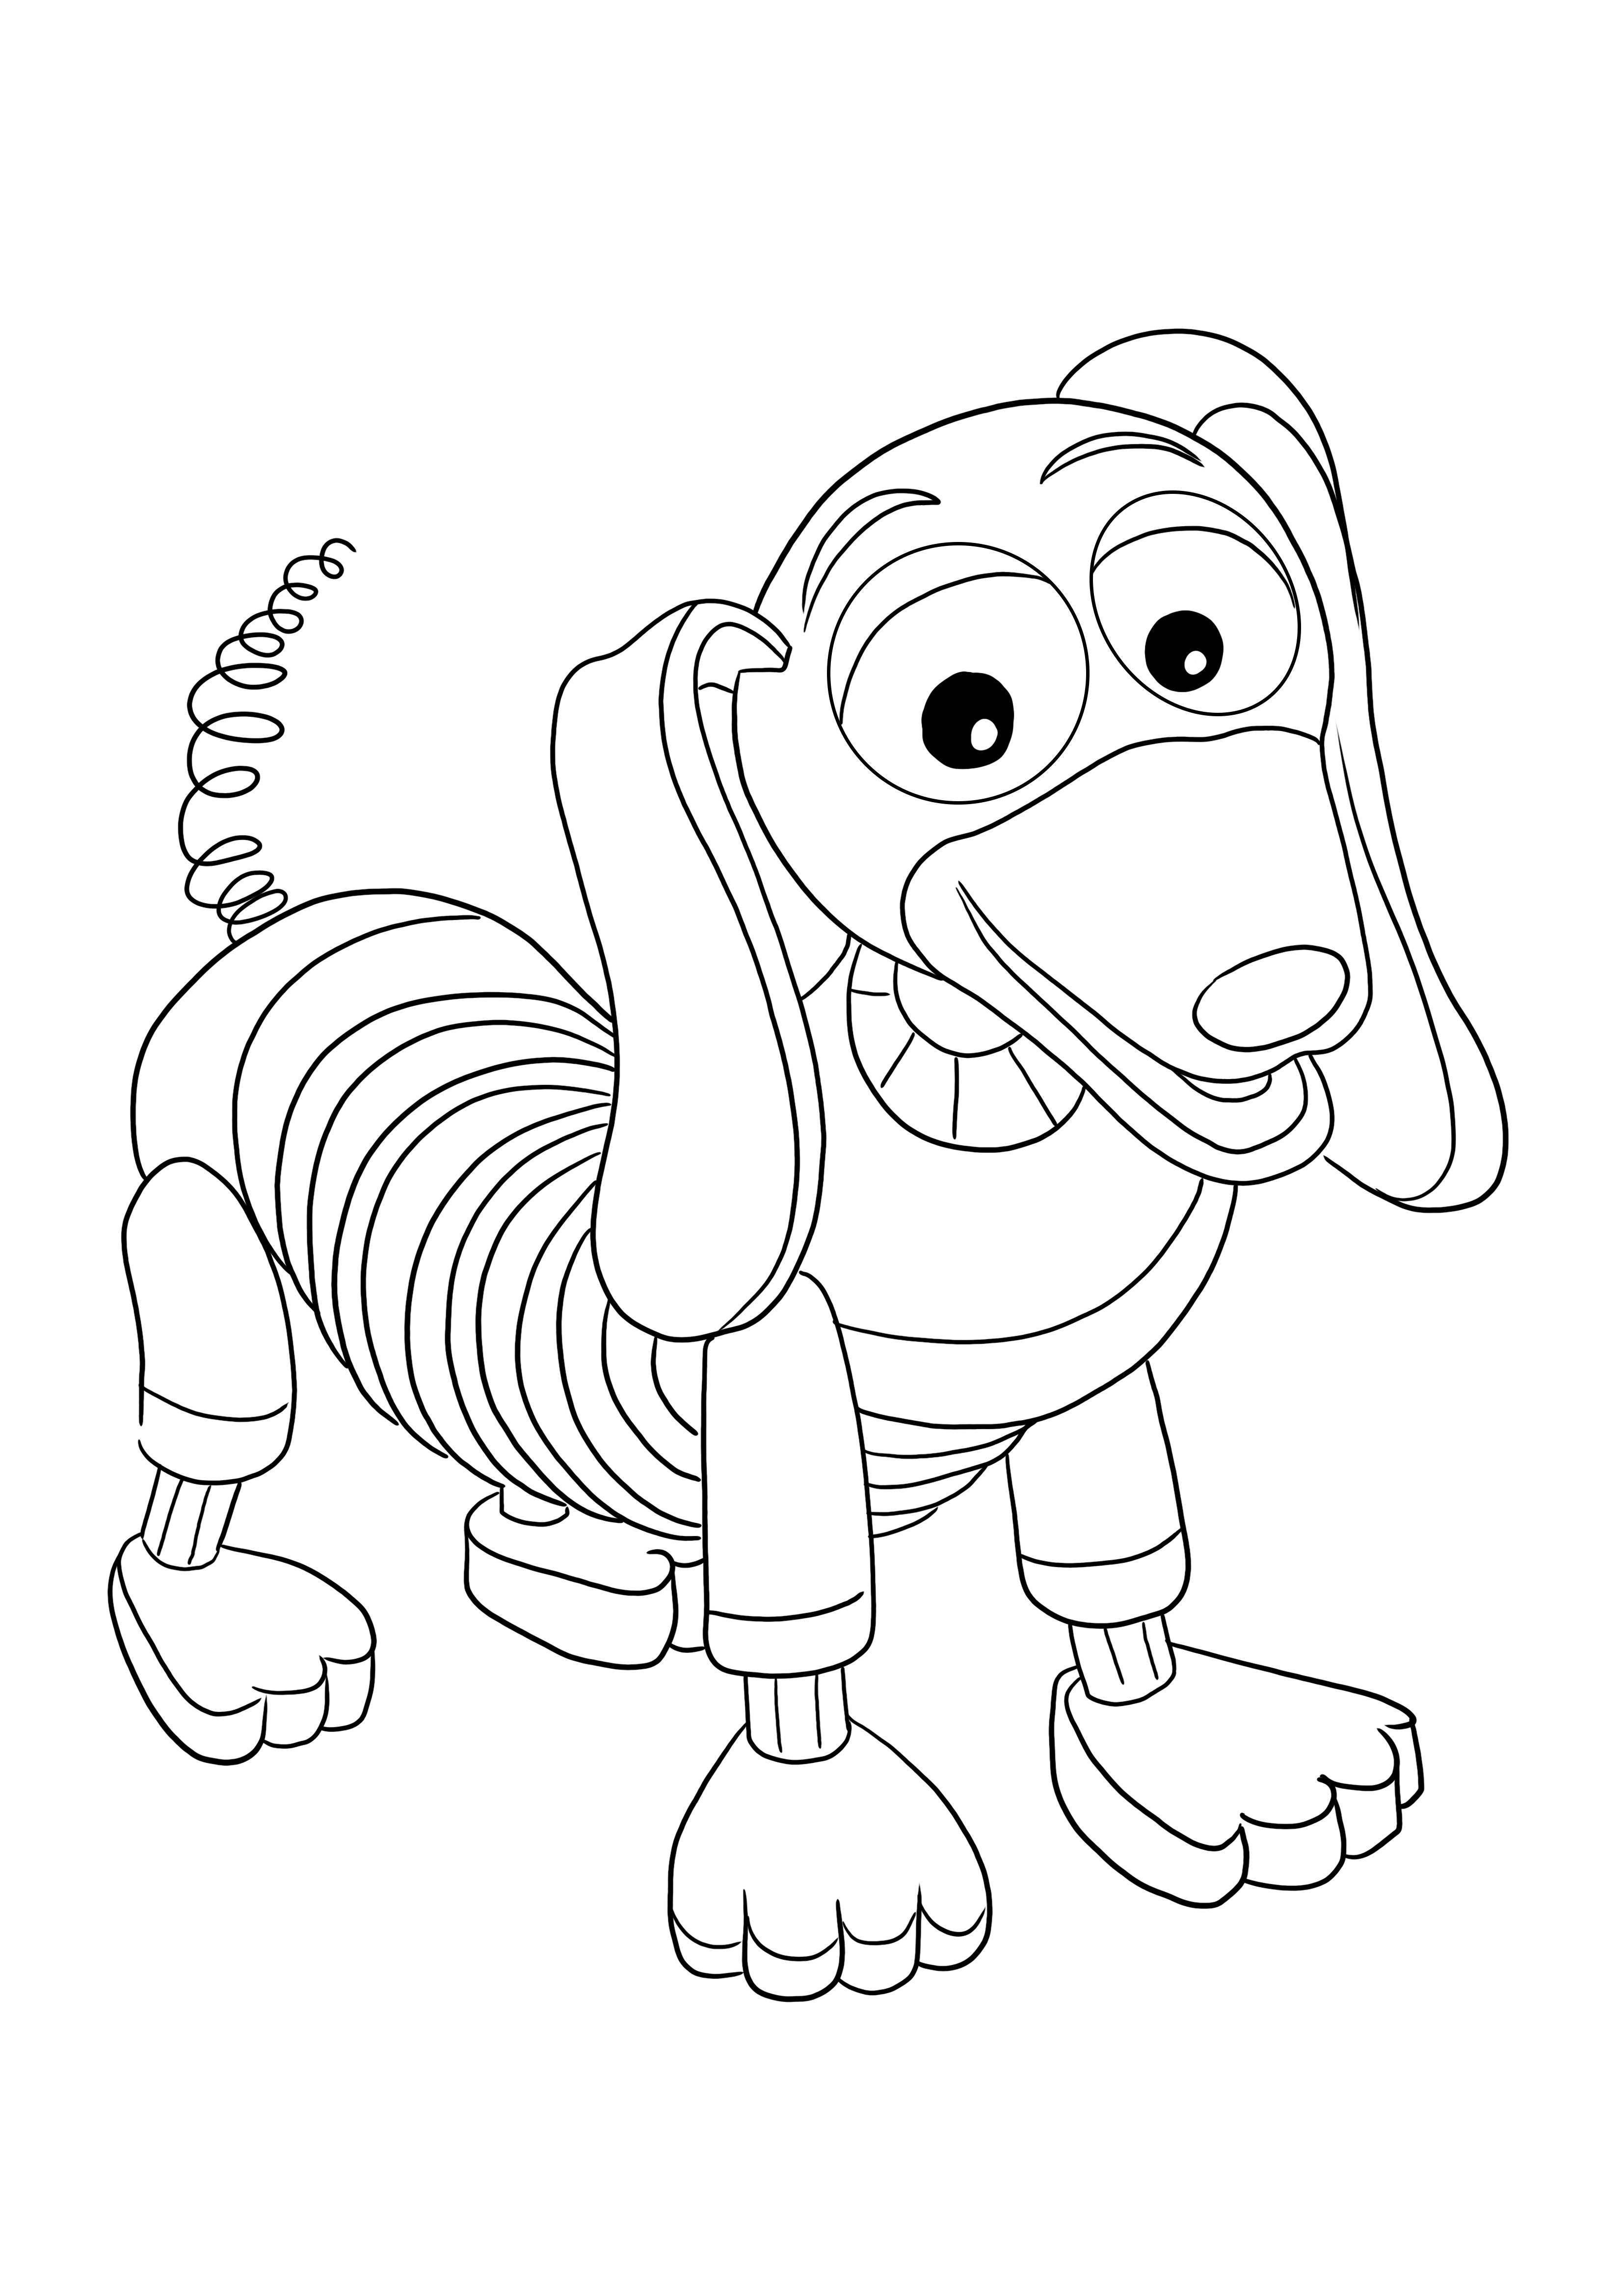 Slinky Dog para imprimir e colorir gratuitamente para crianças de todas as idades